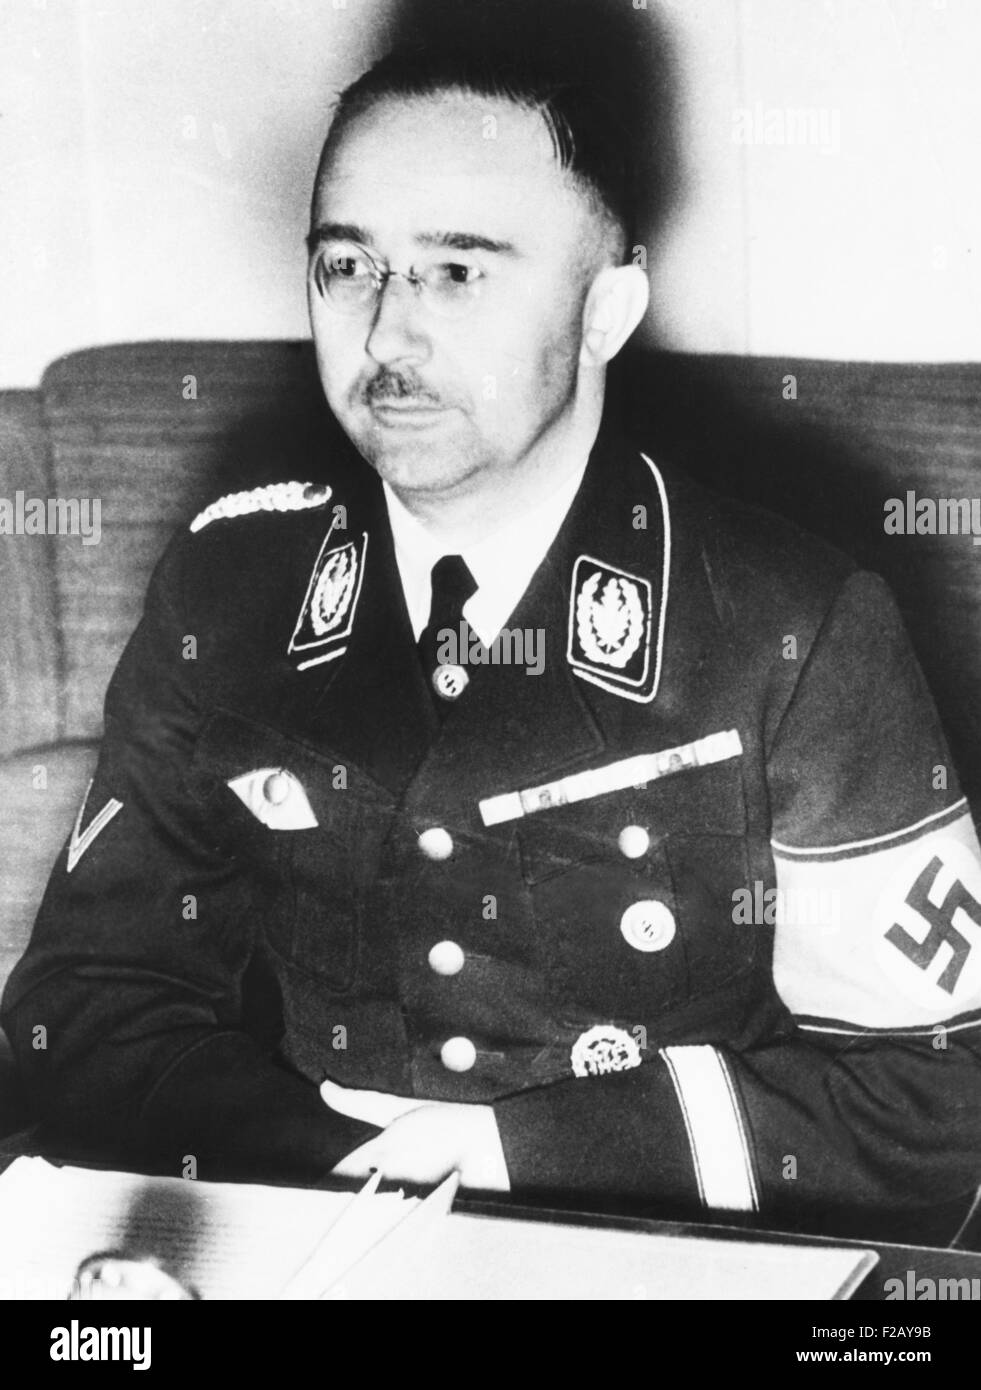 Heinrich Himmler, Führer der Nazi-Deutschlands Elite Schutzstaffel oder SS Ca. 1940. Von 1939 bis 1945 leitete während des zweiten Weltkriegs er die Ermordung von 6 Millionen Juden, Roma, andere Zivilisten, in Höhe von mehr als 11 Millionen. (CSU 2015 9 837) Stockfoto